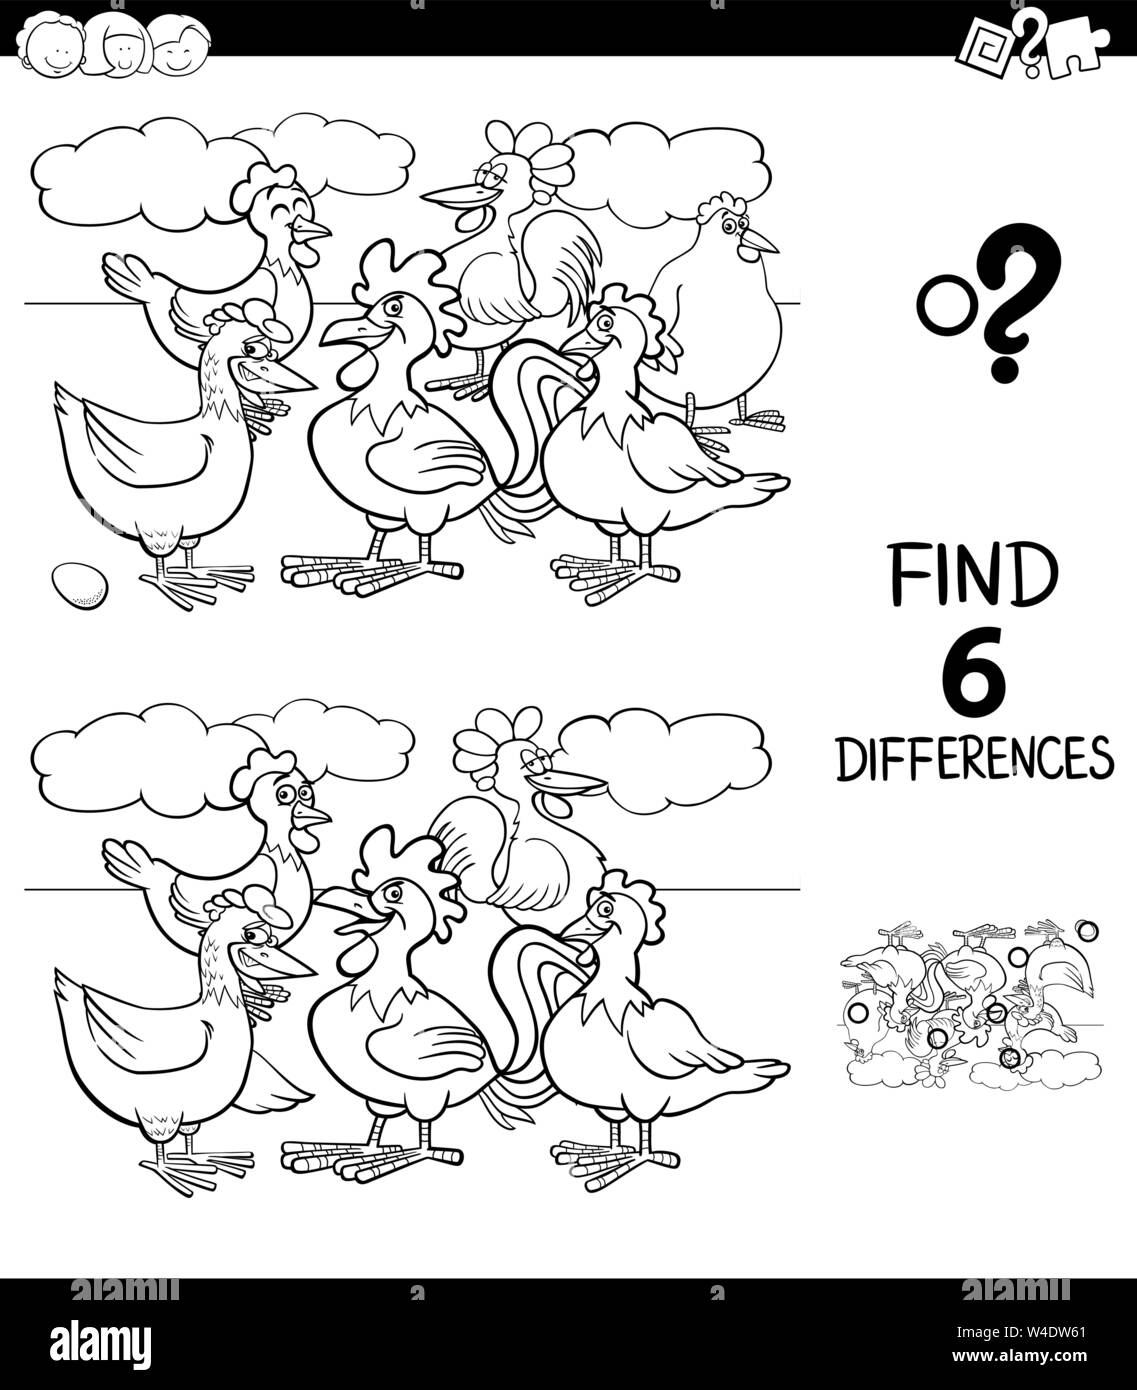 Schwarze und Weiße Cartoon Illustration des Findens von sechs Unterschiede zwischen den Bildern Lernspiel für Kinder mit Hennen und Hähne Farm Animal Char Stock Vektor